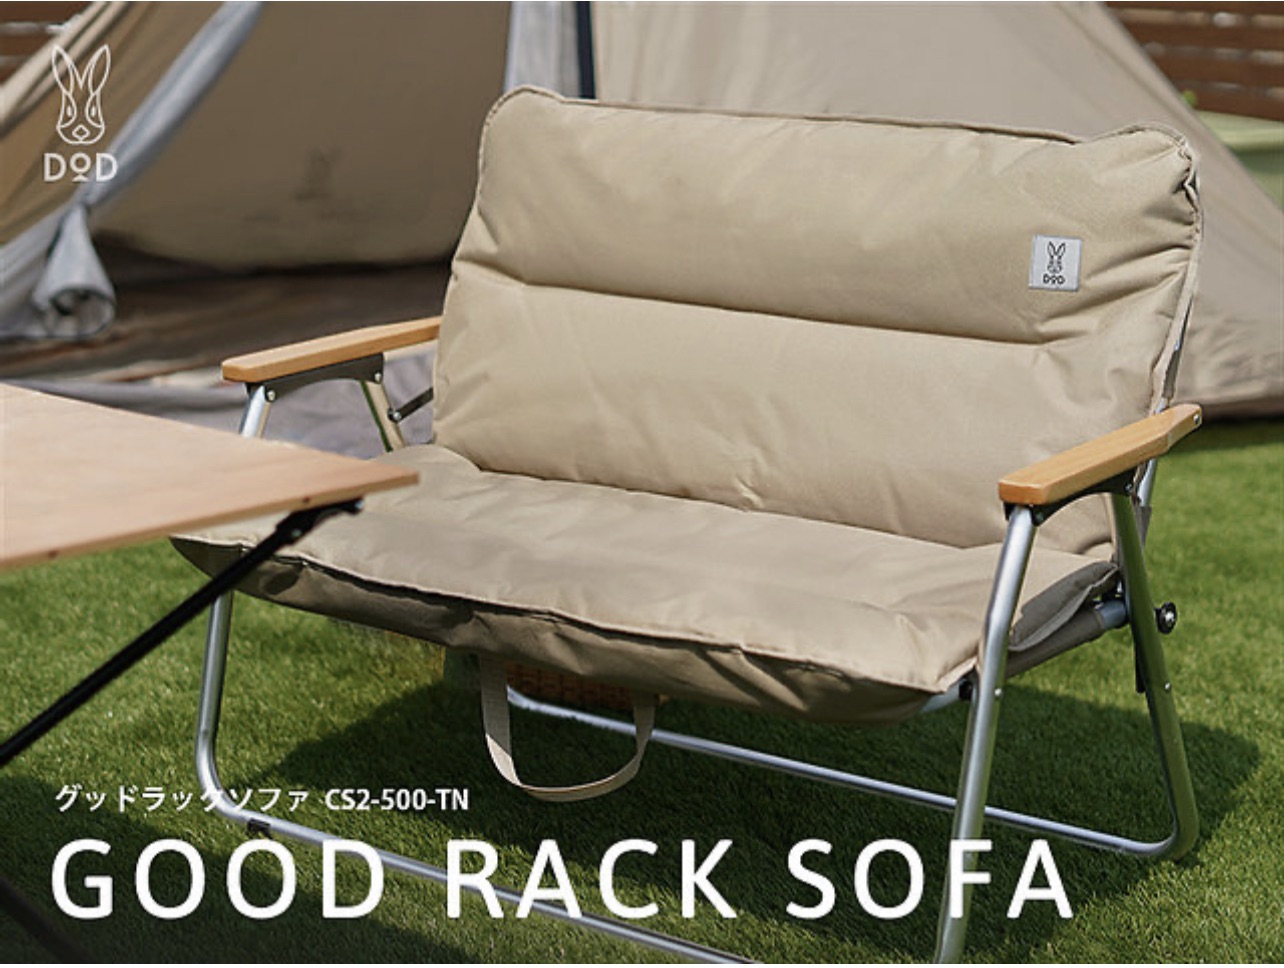 DoD Good Rack Sofa Tan โฟซายอดฮิต🛋